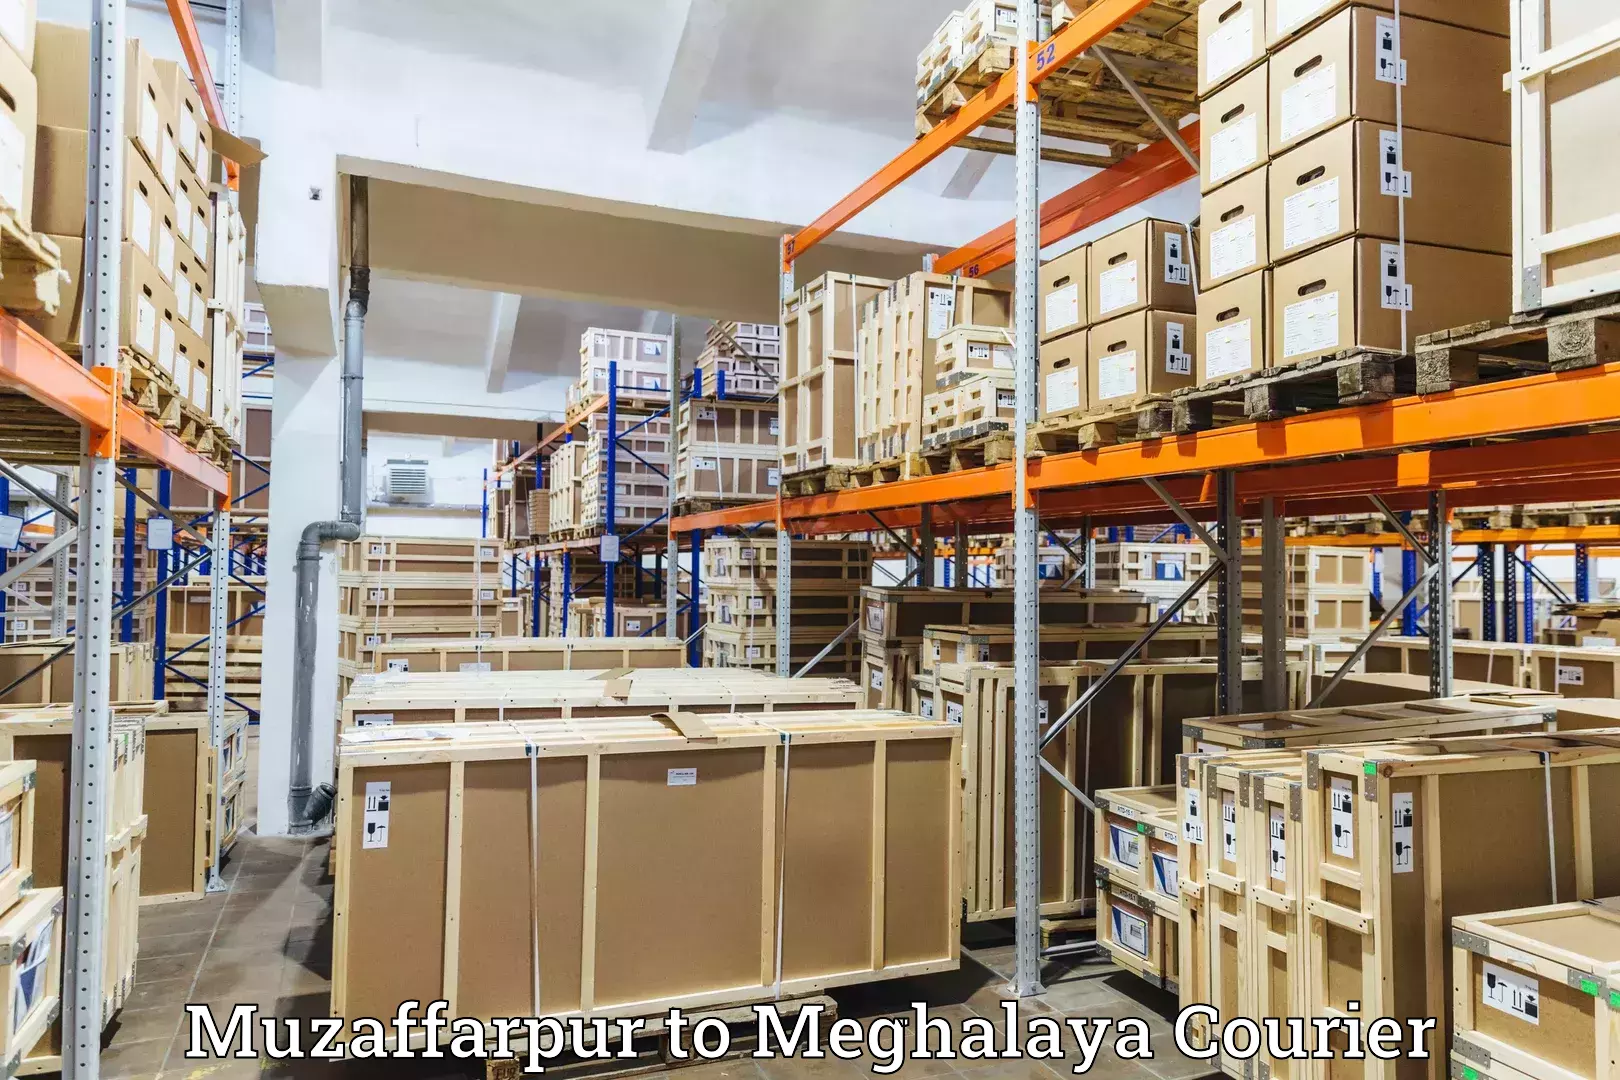 Express delivery solutions Muzaffarpur to Dkhiah West